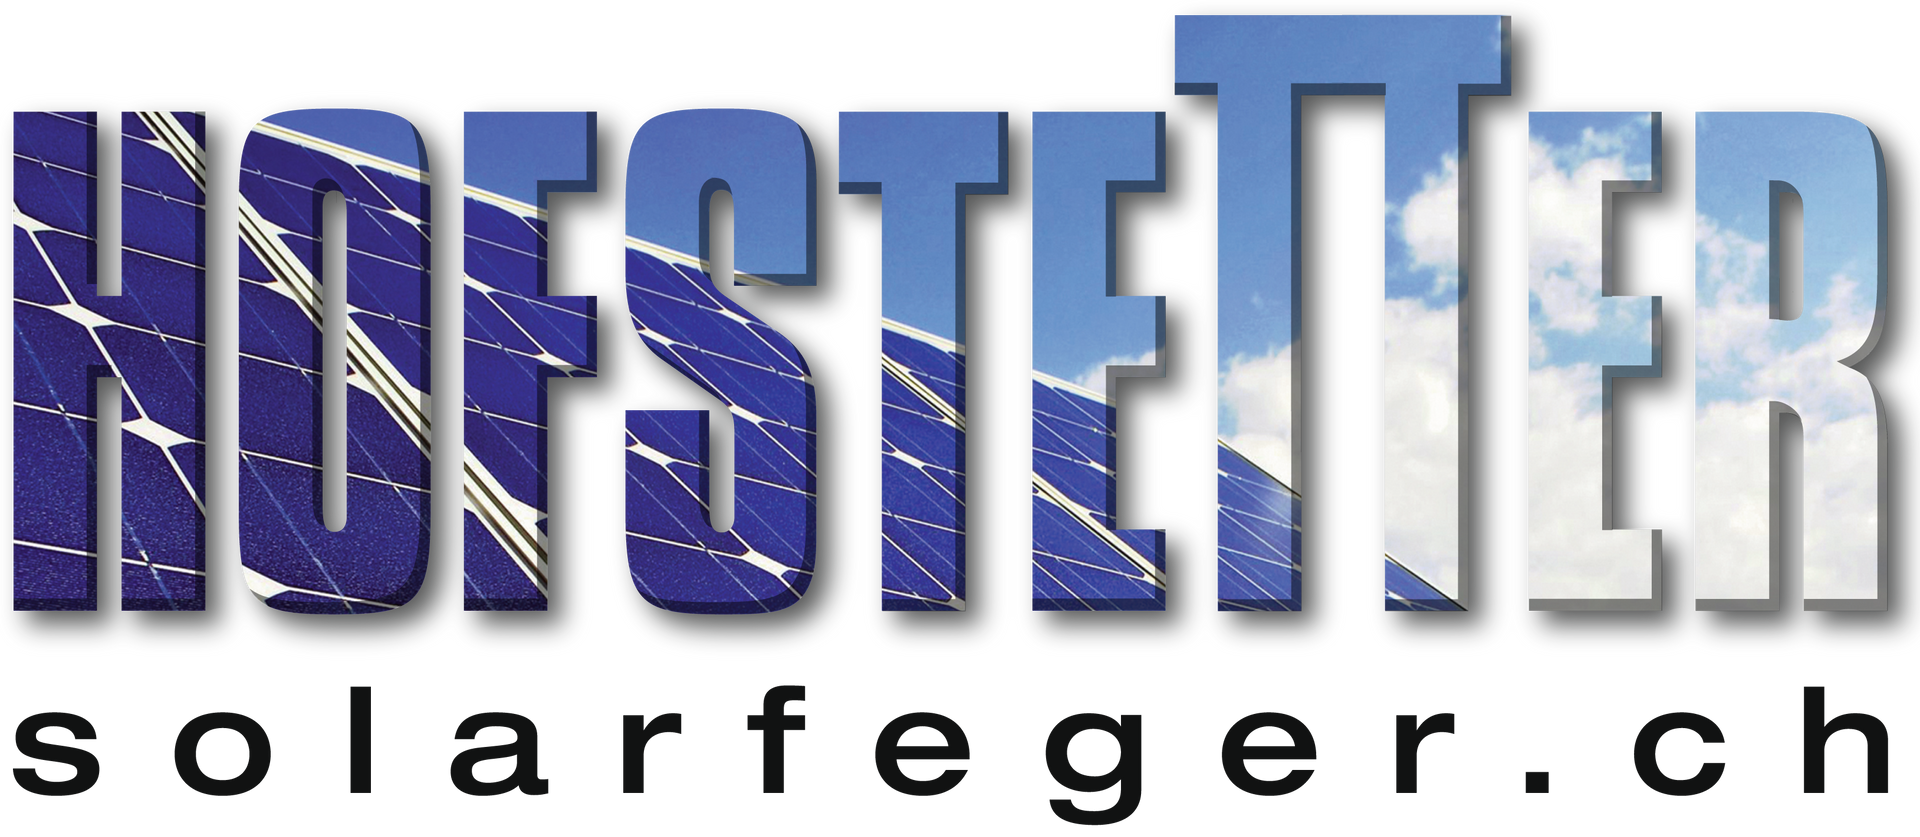 Logo Hofstetter solarfeger